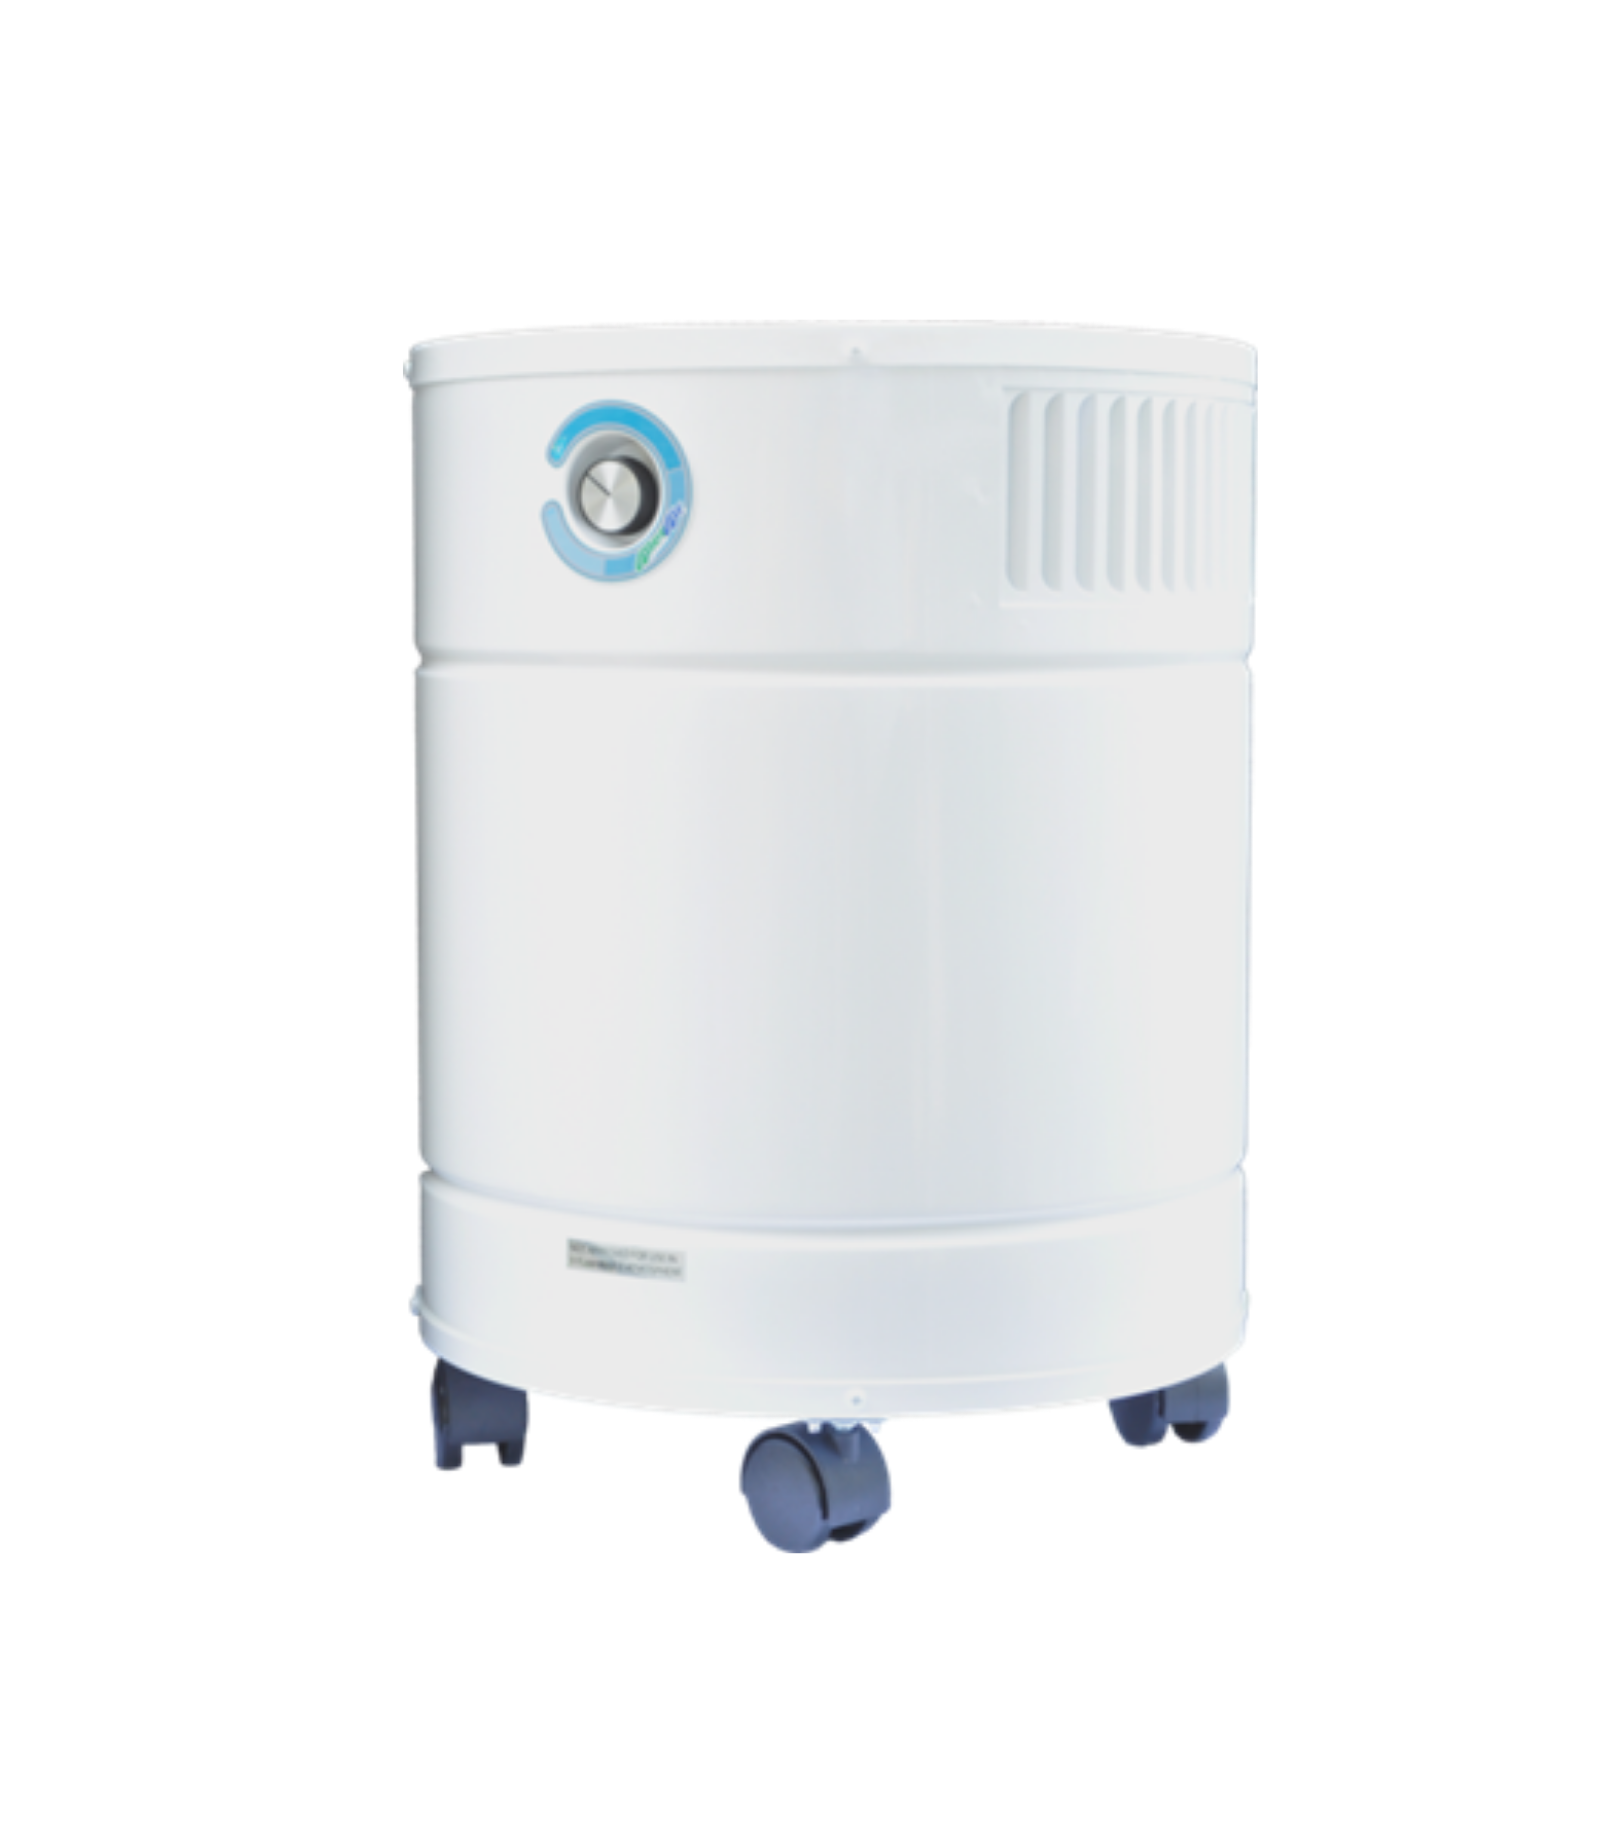 Allerair AirMedic Pro 5 Ultra Air Purifier